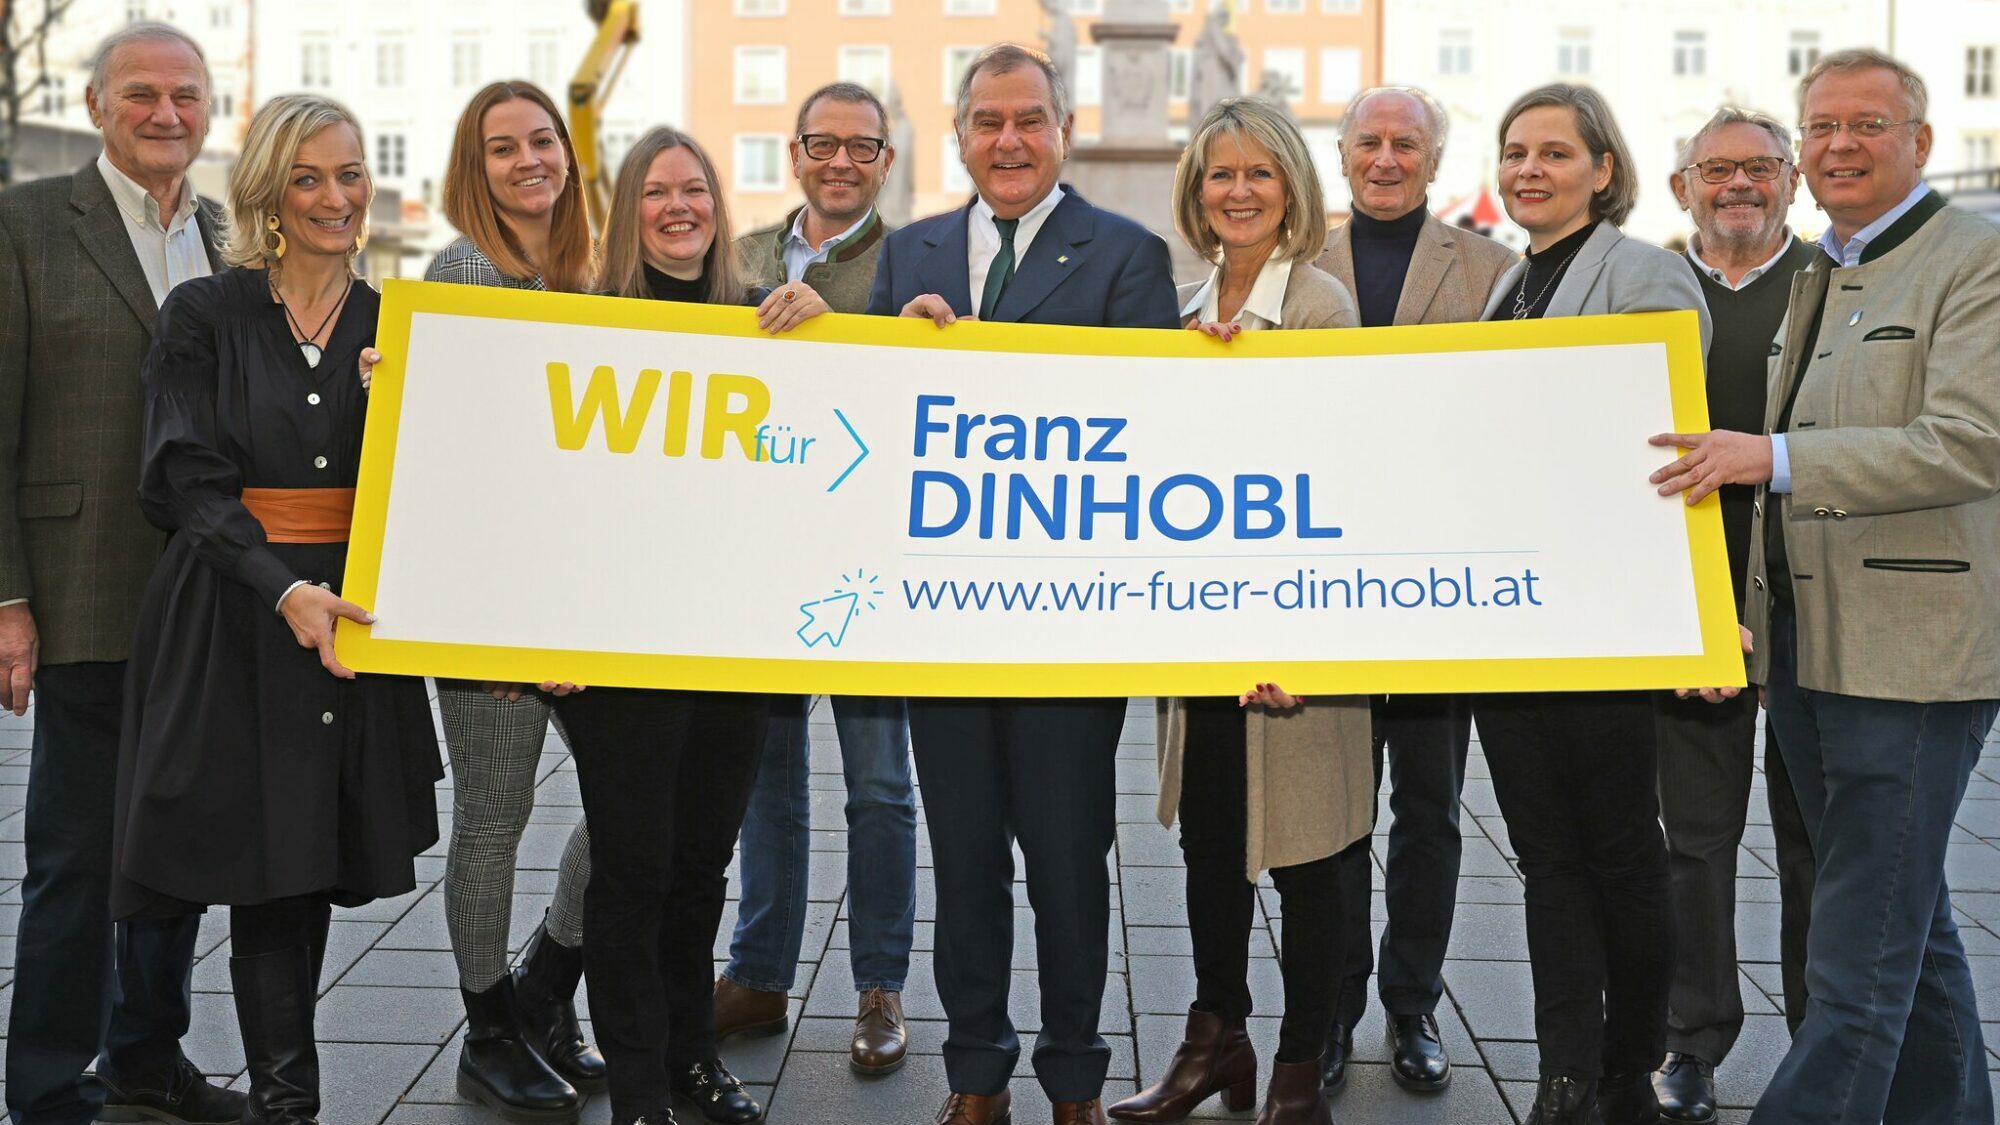 Personenkomitee Wir für Dinhobl / Foto: ÖVP Wiener Neustadt